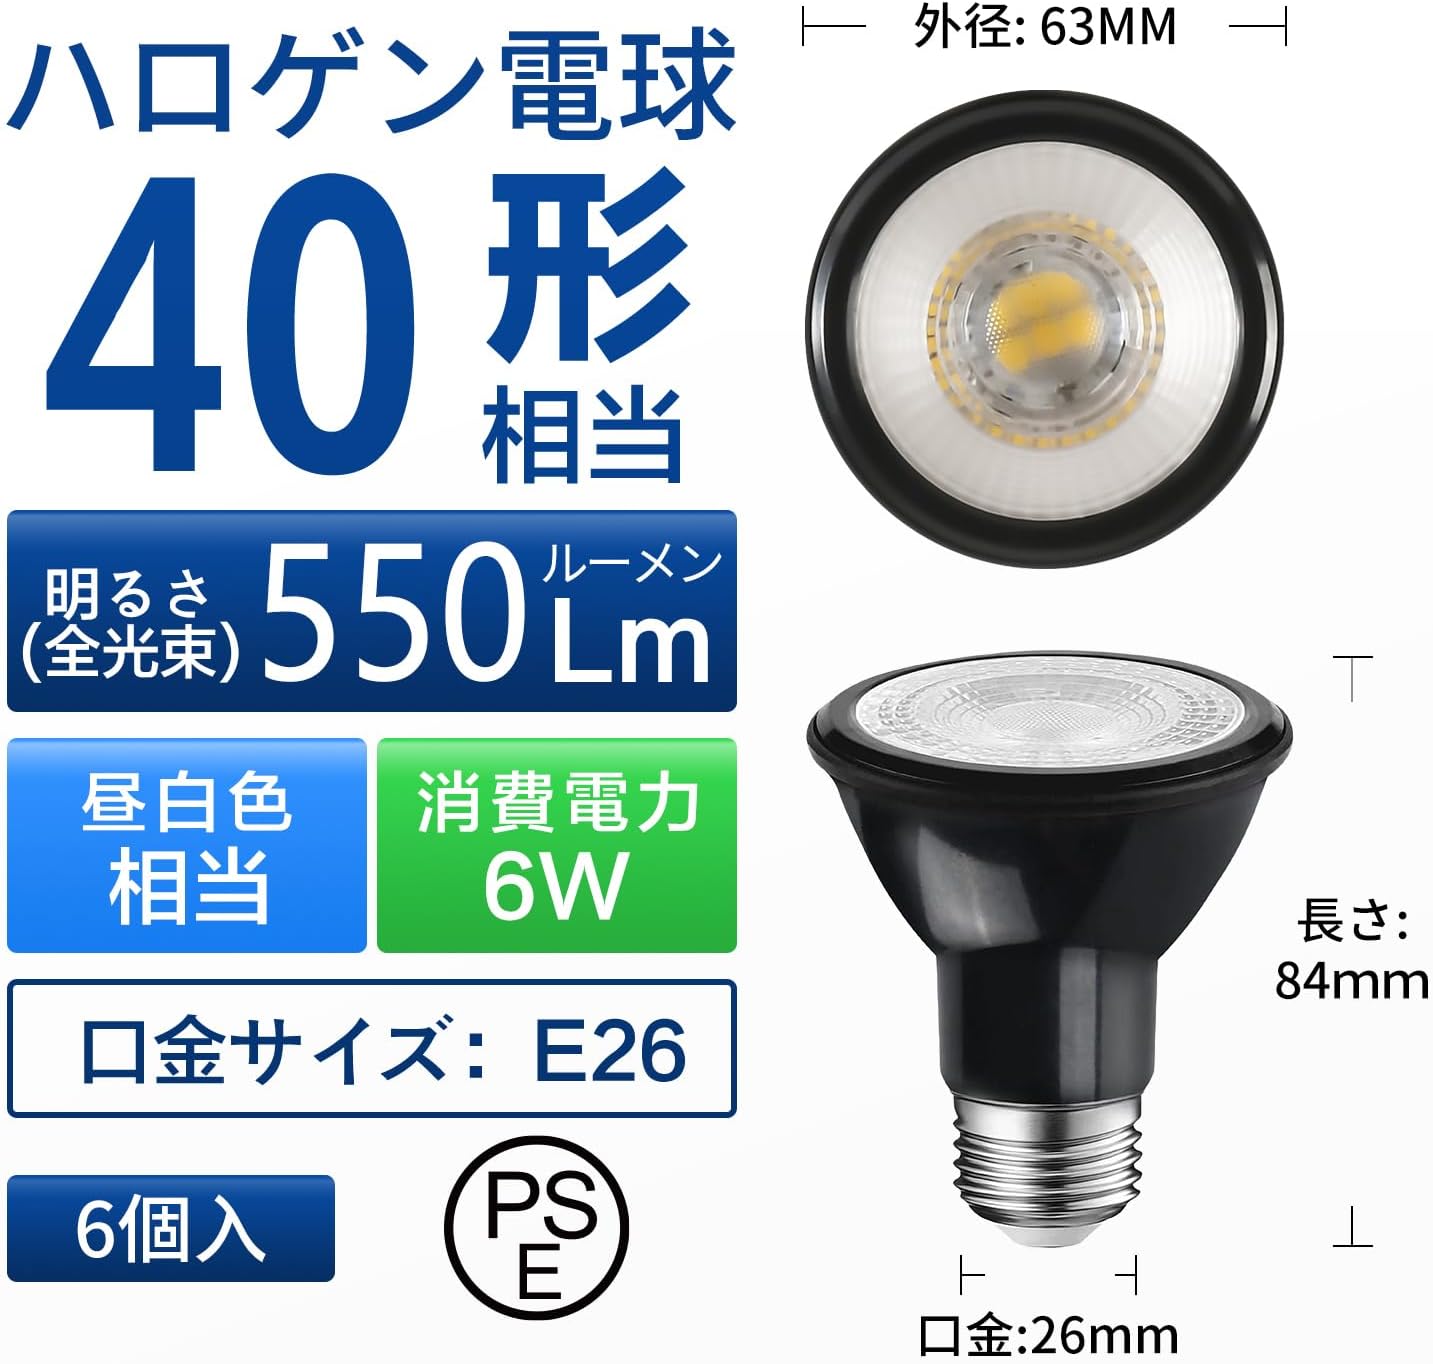 LED電球 スポットライト E26口金 ビーム電球 550LM 消費電力6W (ハロゲン電球40W相当) PAR20 集光タイプ リモコン付き LEDランプ 遠隔操作 広配光タイプ 1個SET 4個SET 6個SET(電池別売)